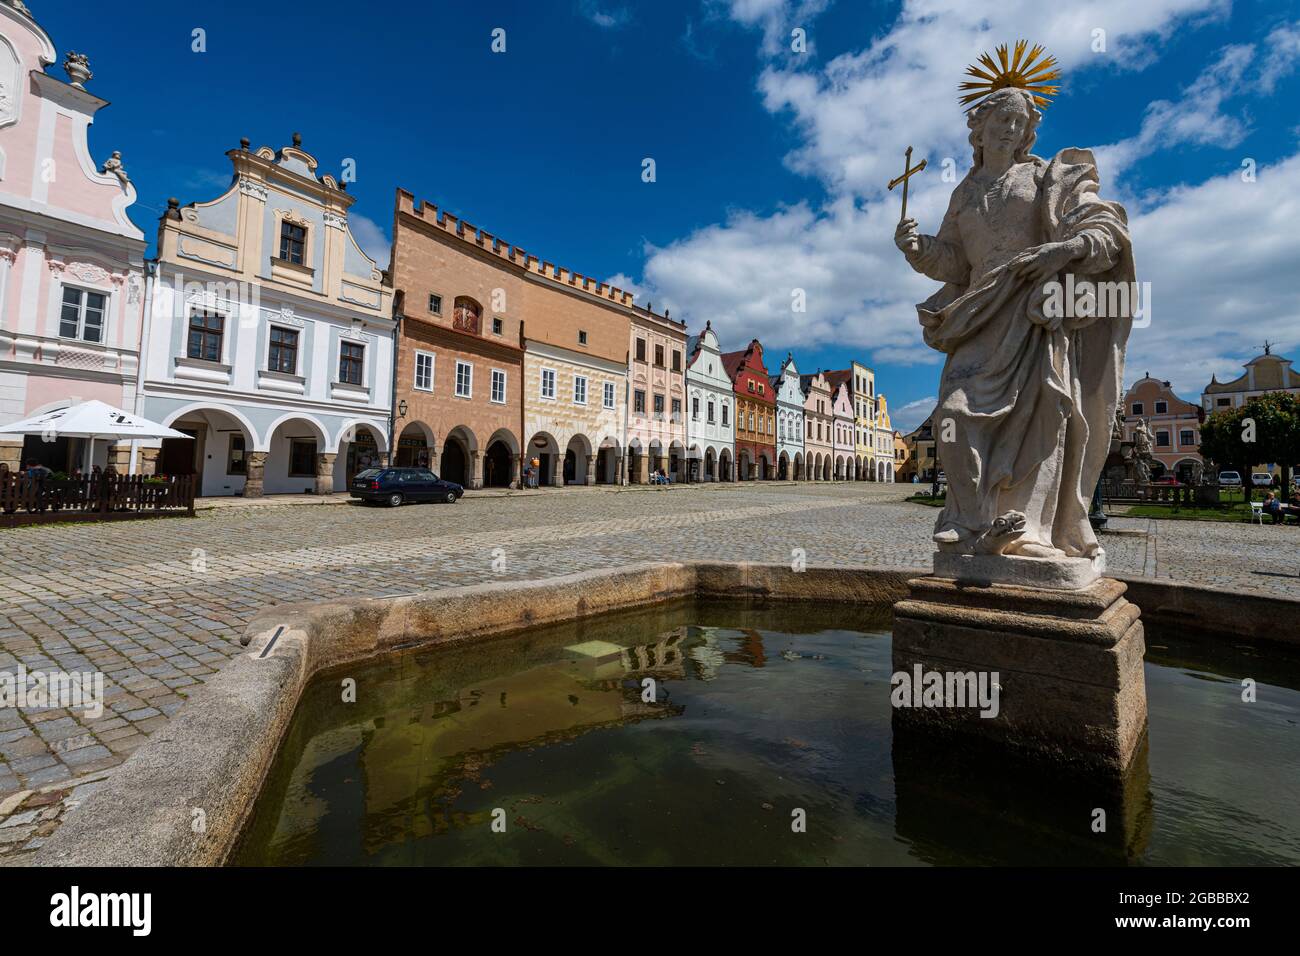 Il centro storico di Telc, Patrimonio dell'Umanità dell'UNESCO, Moravia meridionale, Repubblica Ceca, Europa Foto Stock